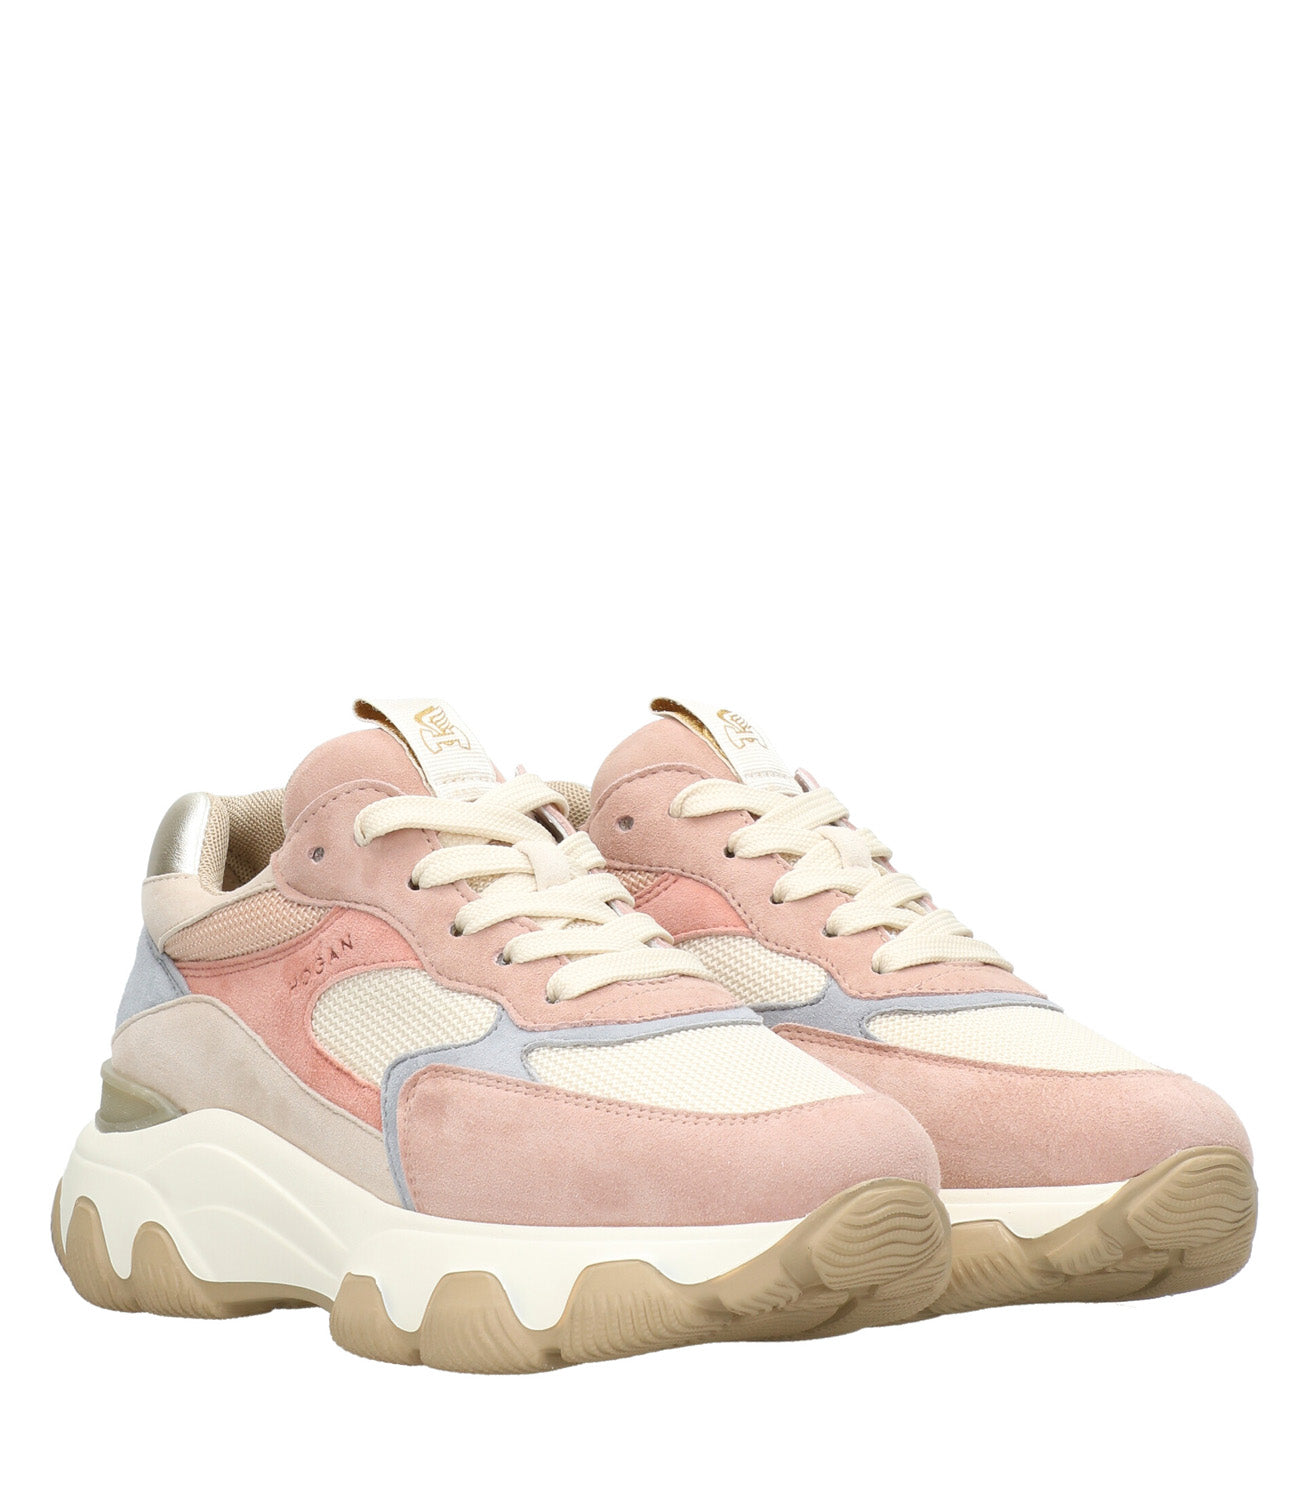 Hogan | Hyperactive Sneakers Beige and Pink